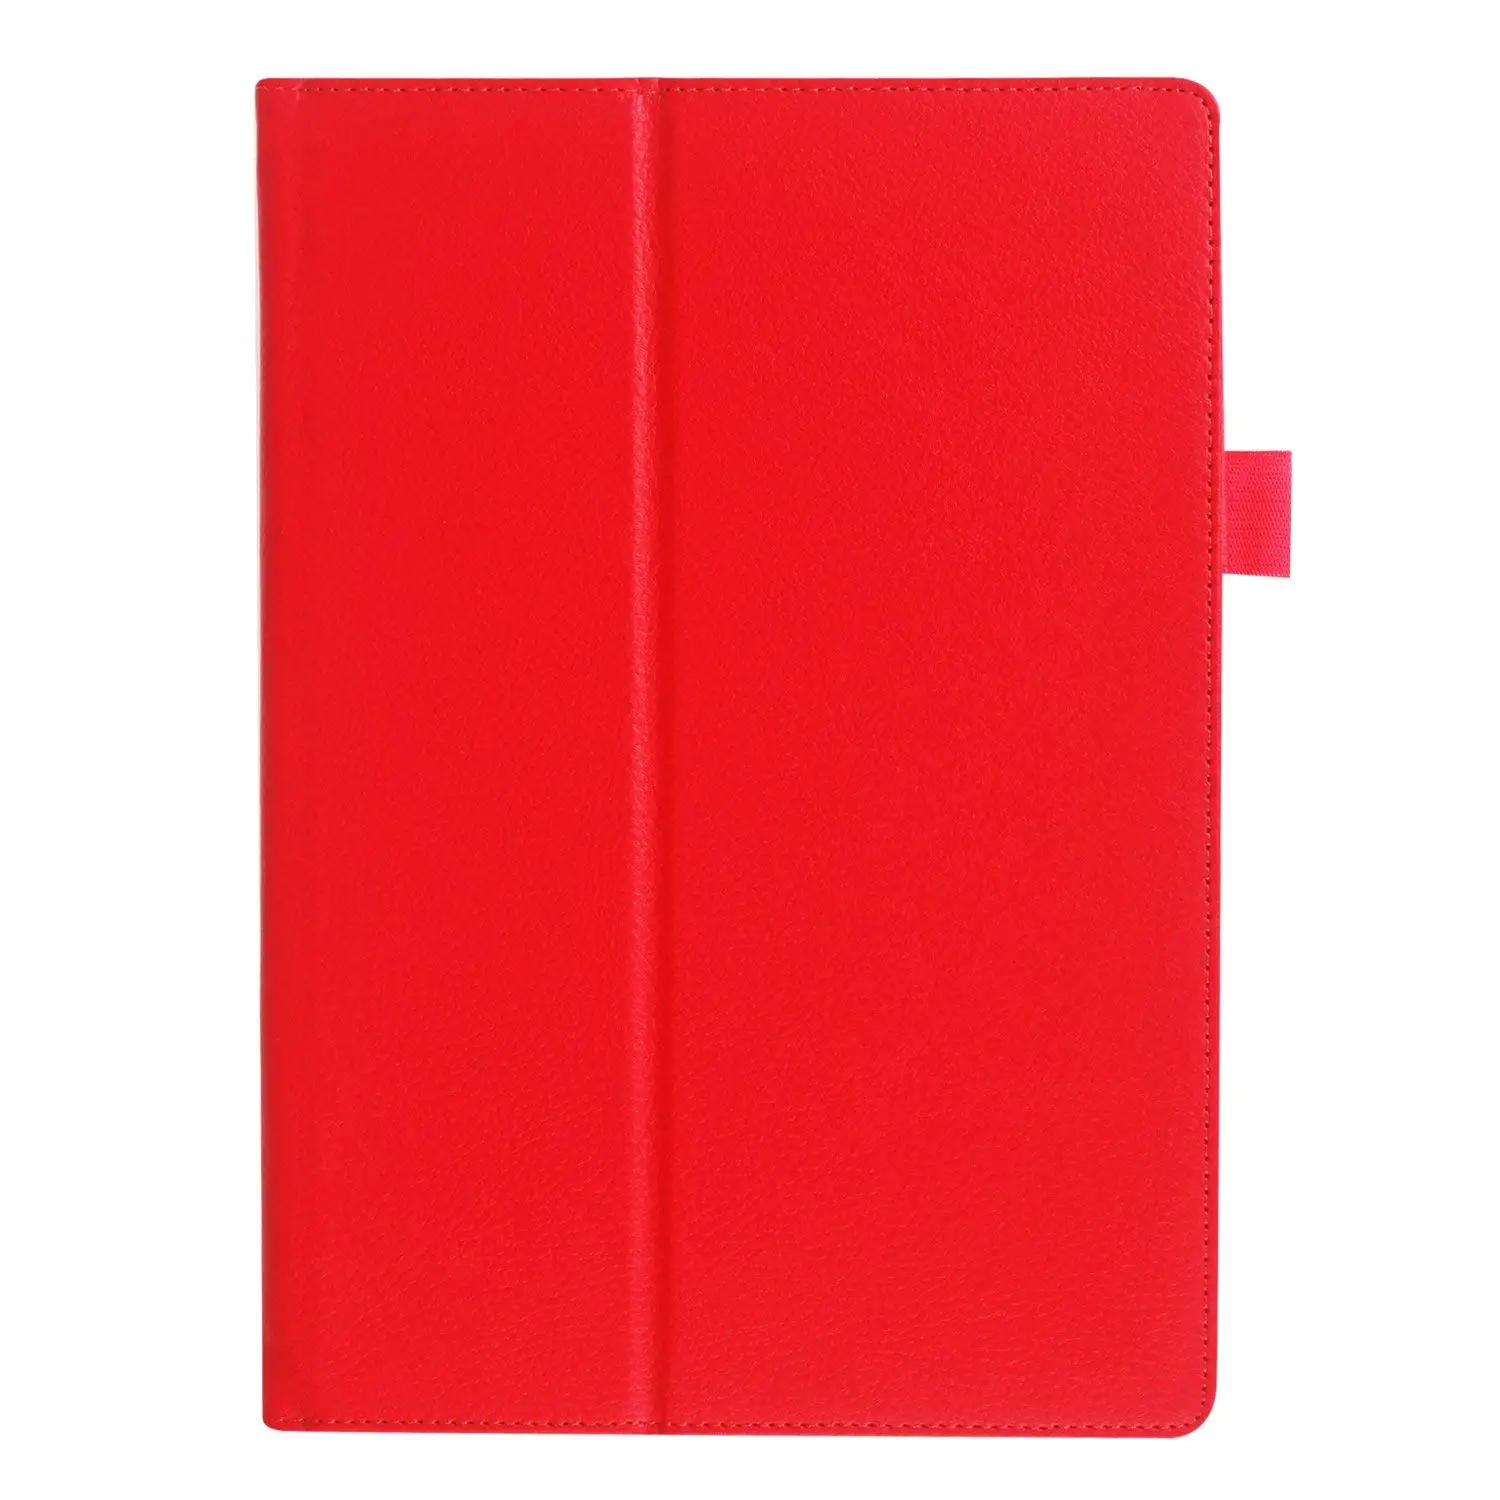 Чехол для lenovo YOGA Tab 3 10,1 чехол Складная подставка личи кожаный чехол для lenovo YOGA Tab 3 10,1 YT-X50F чехол для планшета s стекло - Цвет: red